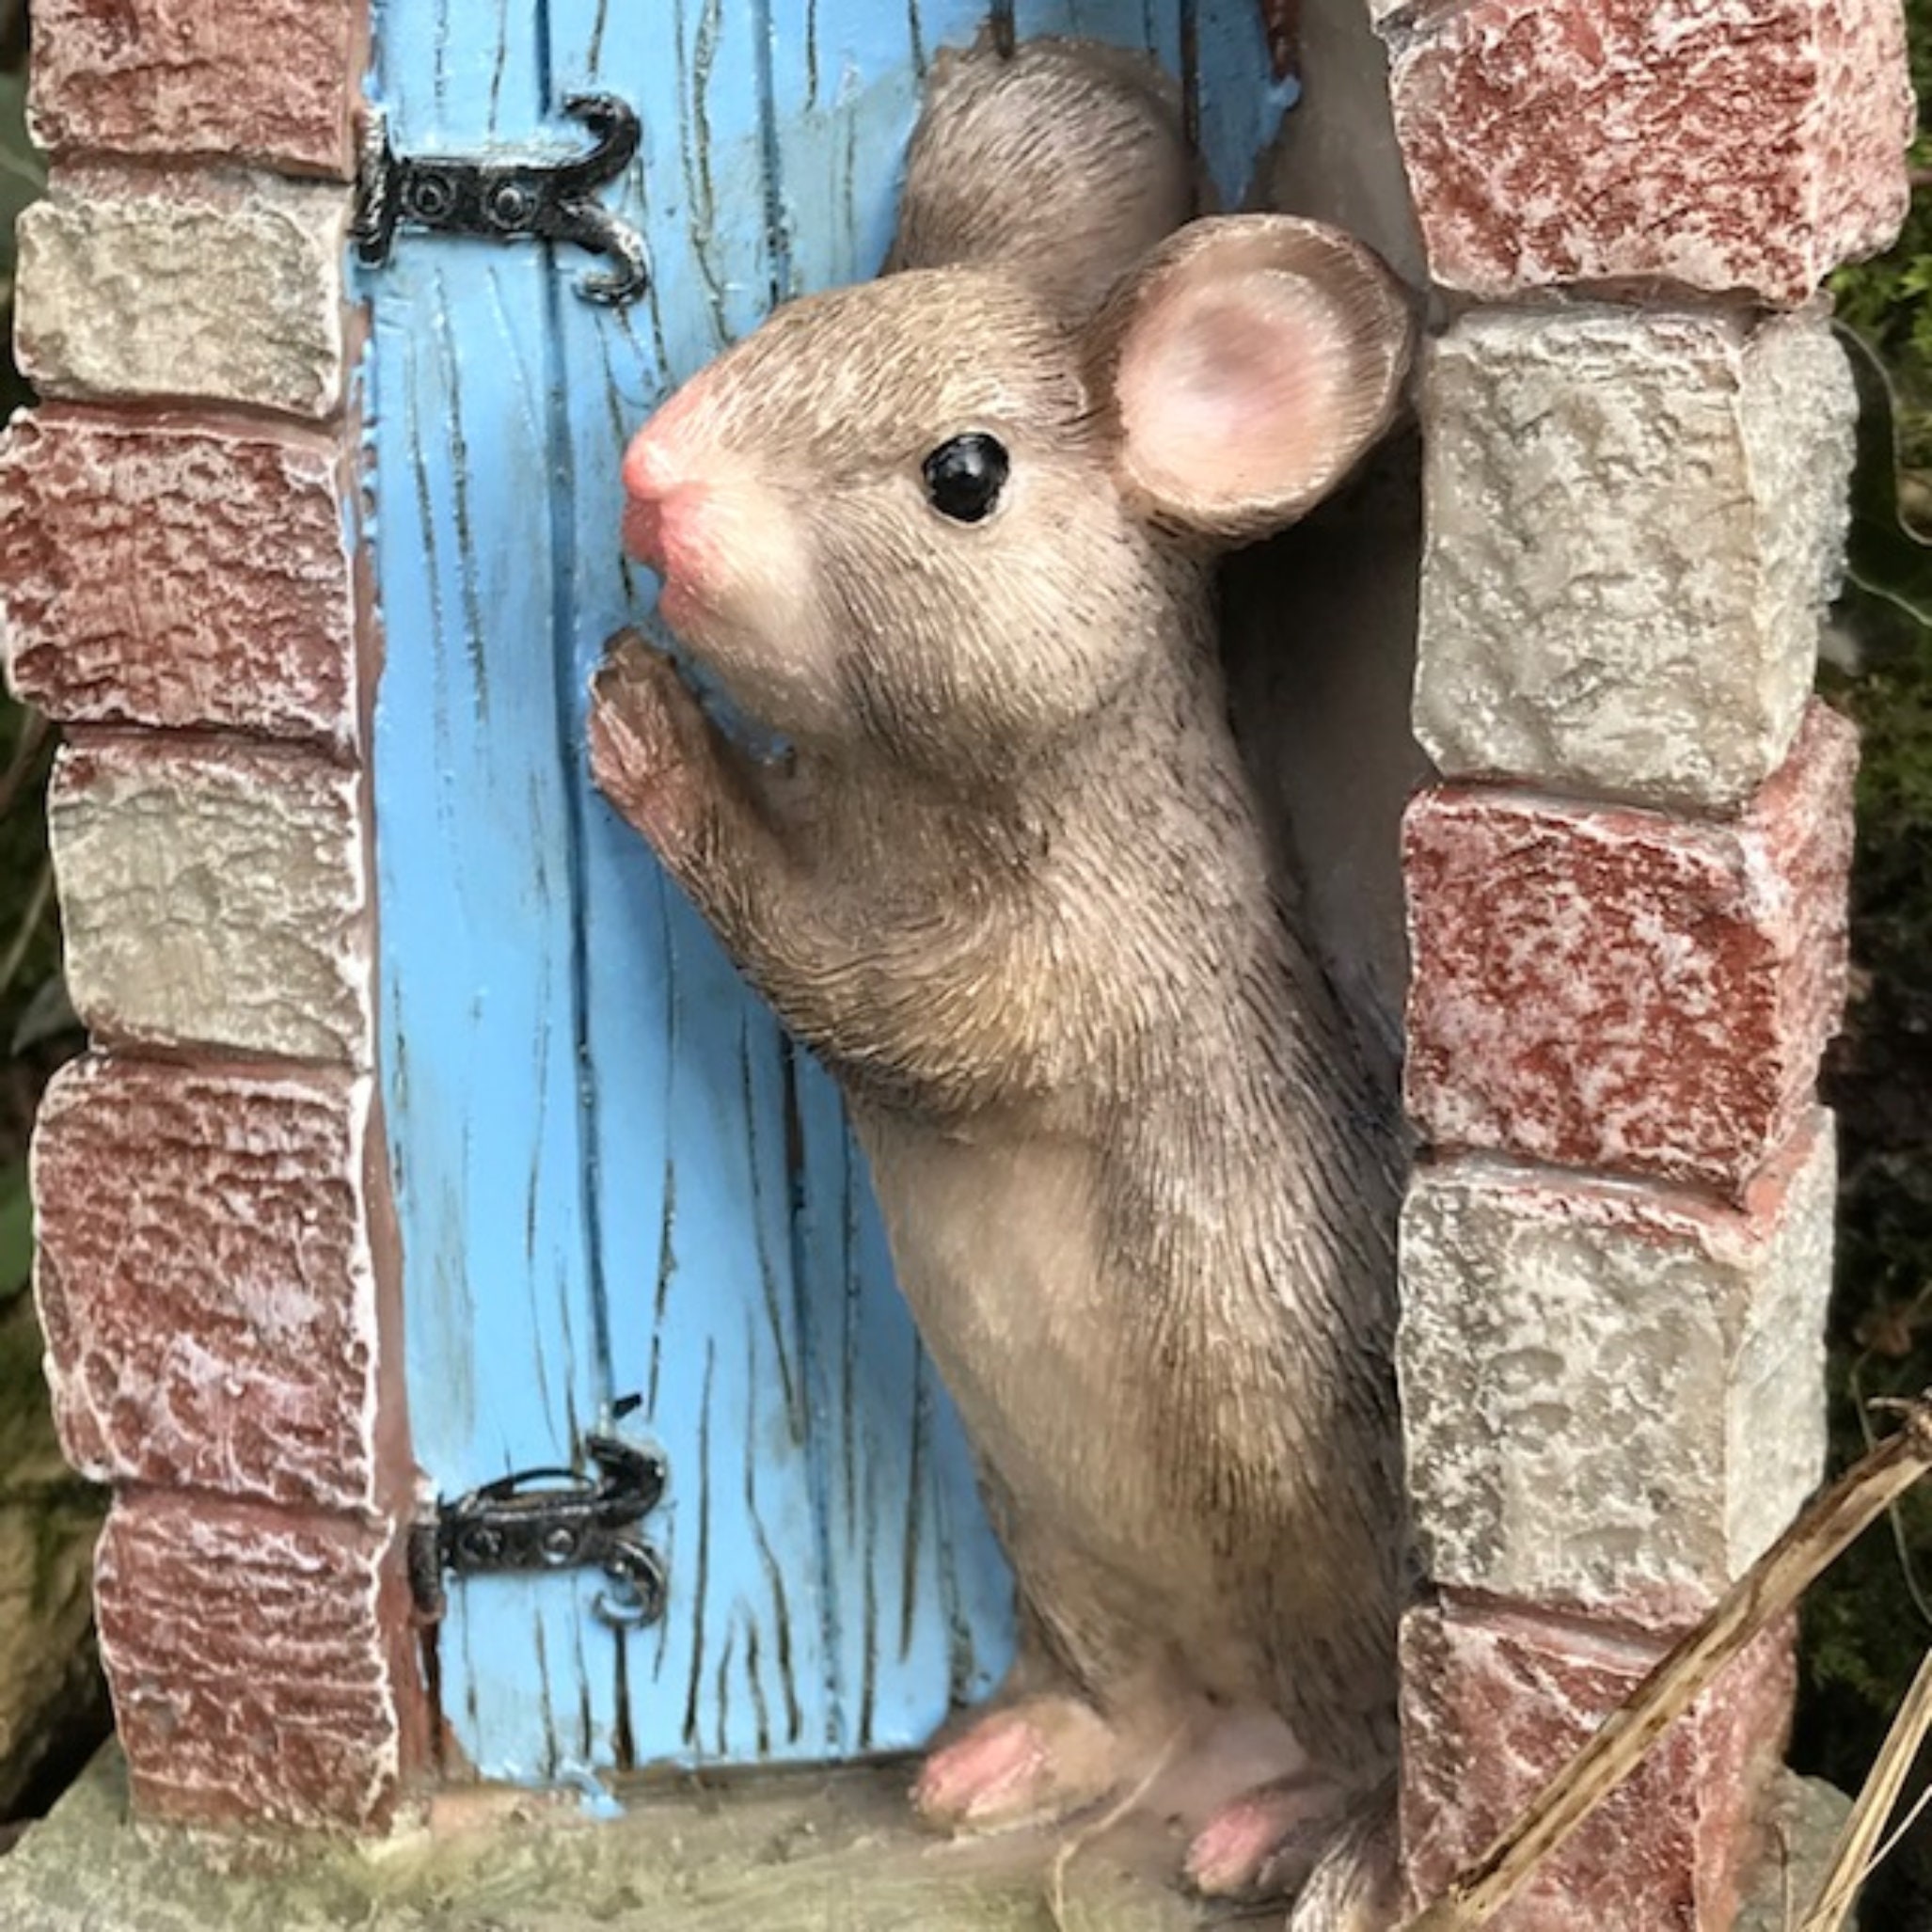 Heavy Resin Mouse Doorway With Red Door, Fairy Garden Door or Fairy Wood  Decoration, Great Mice Lover Gift 